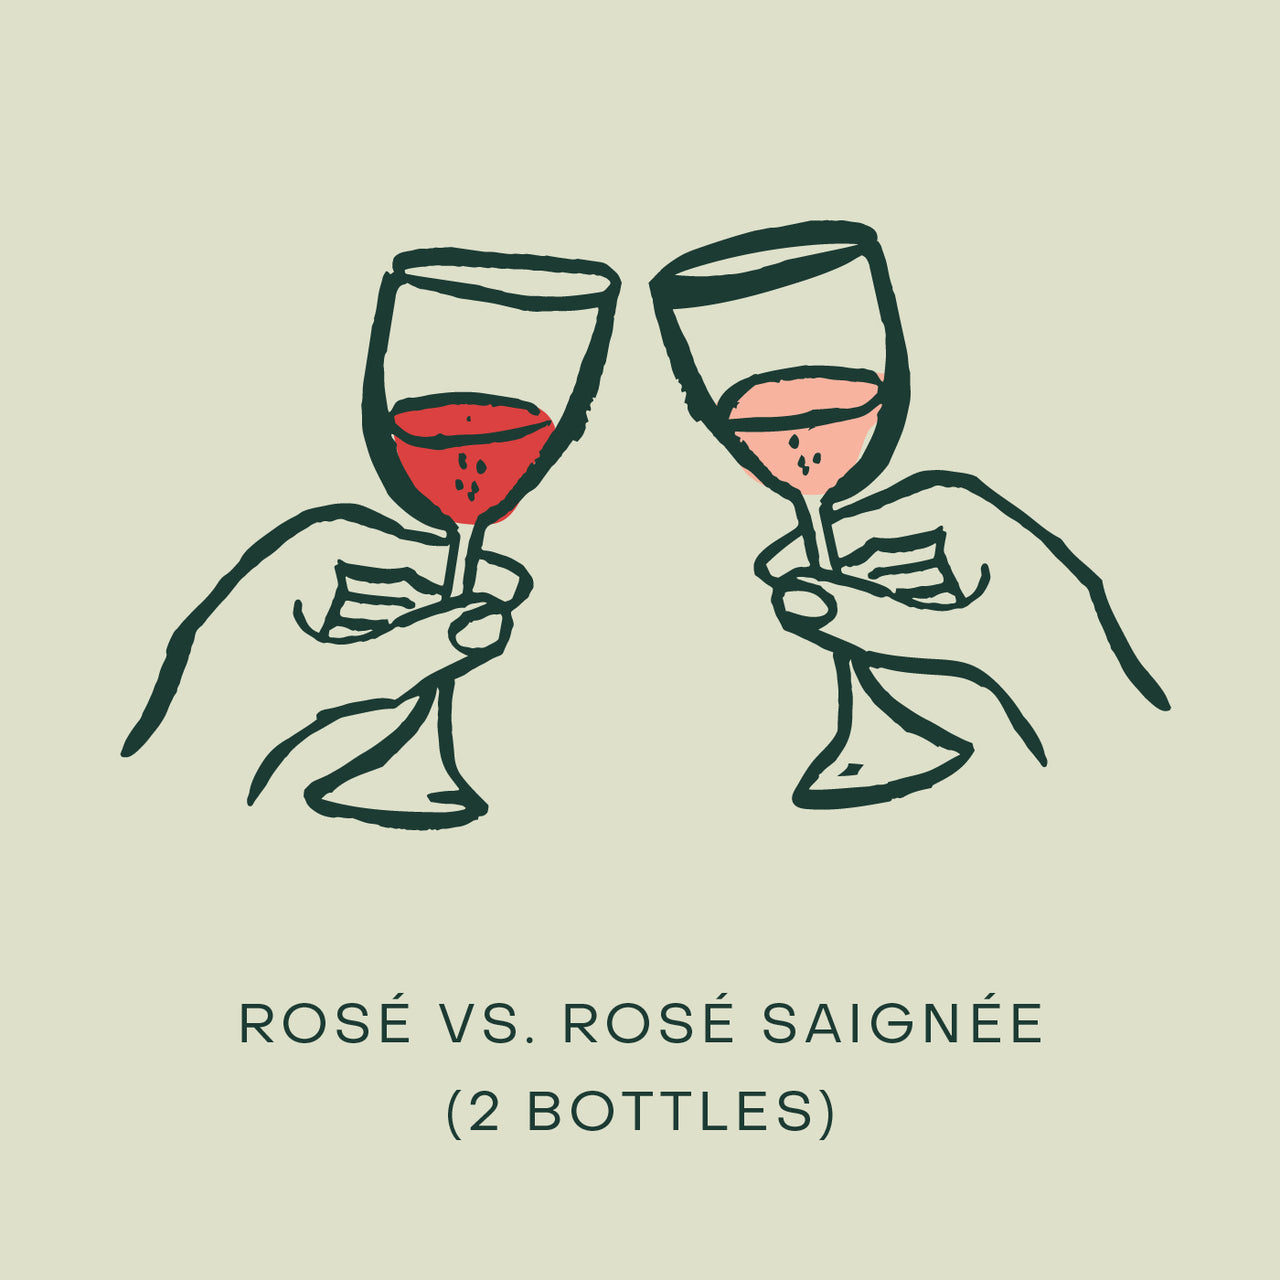 Rosé vs. Rosé Saignée (2 bottles)